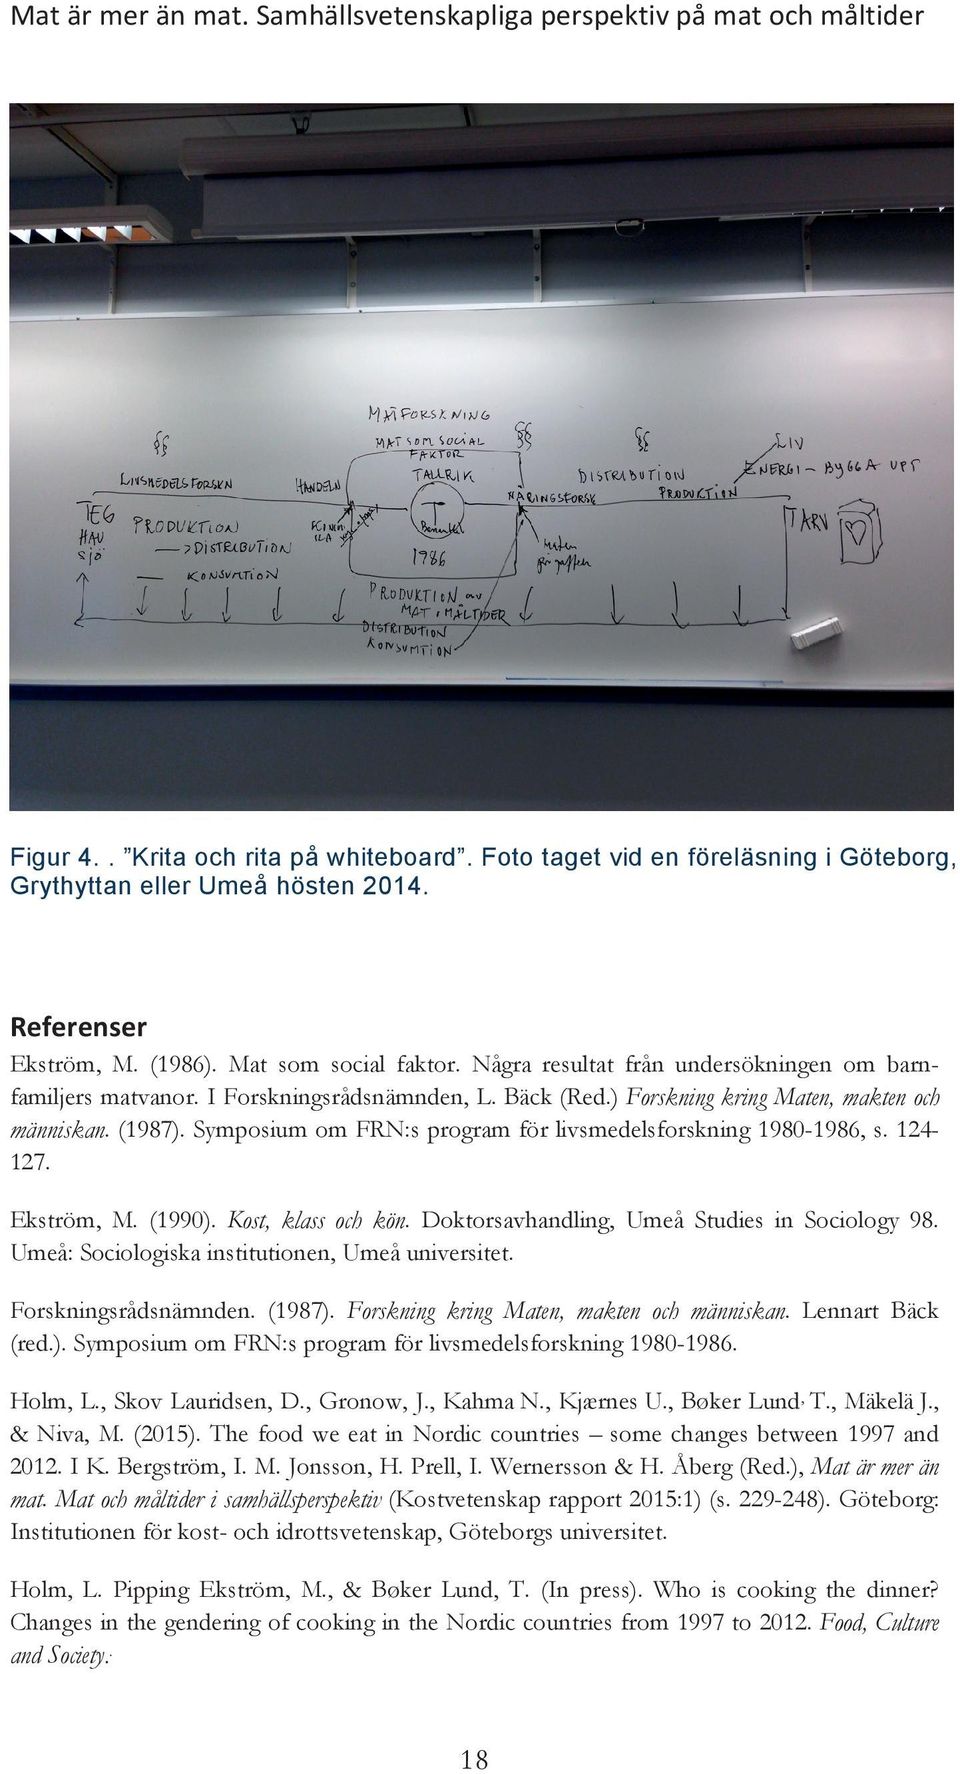 (1987). Symposium om FRN:s program för livsmedelsforskning 1980-1986, s. 124-127. Ekström, M. (1990). Kost, klass och kön. Doktorsavhandling, Umeå Studies in Sociology 98.